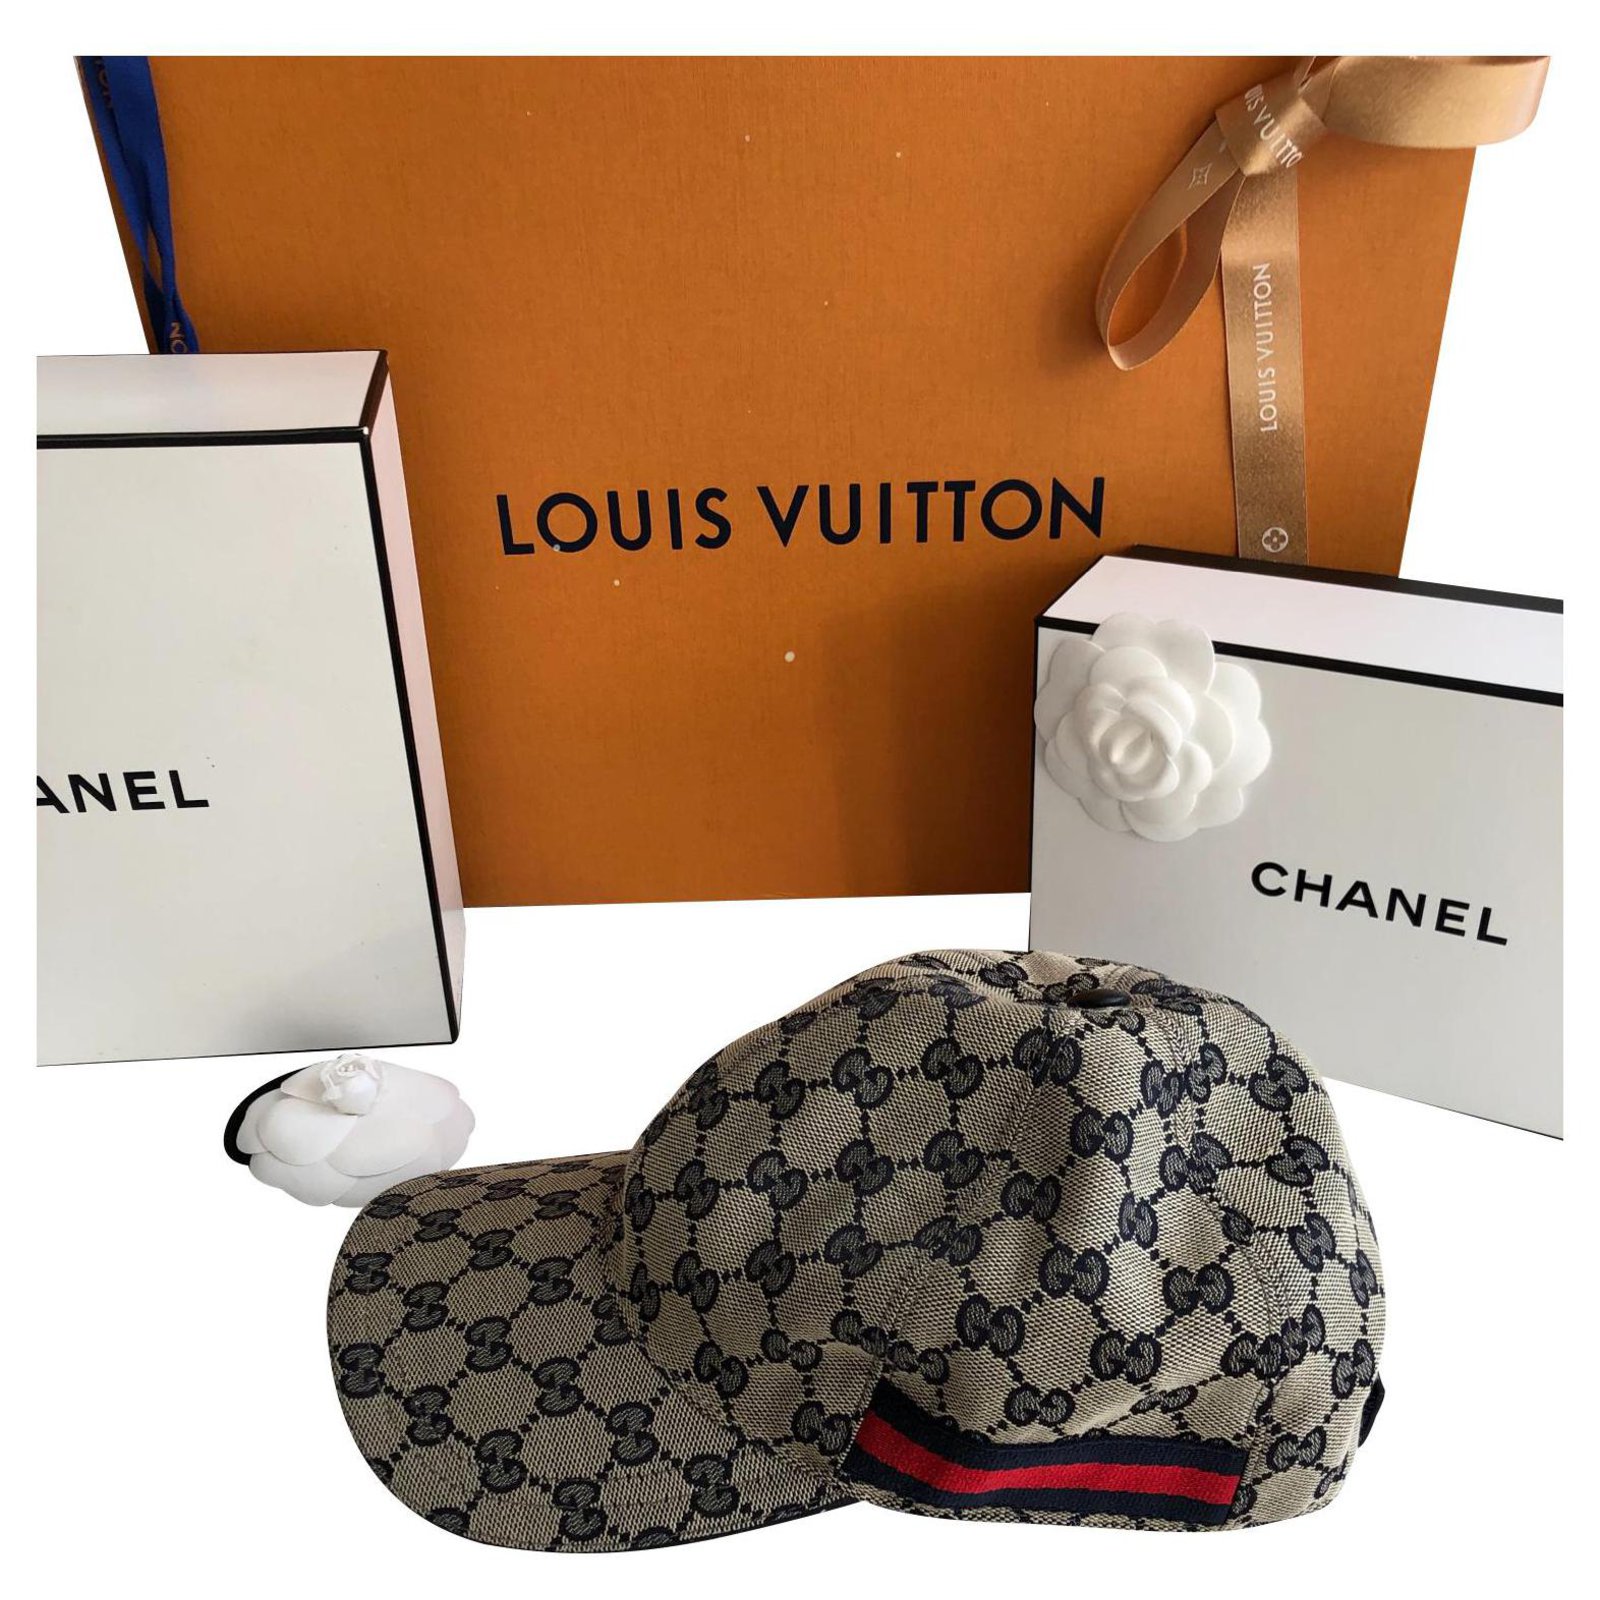 Second hand Louis Vuitton Hats - Joli Closet